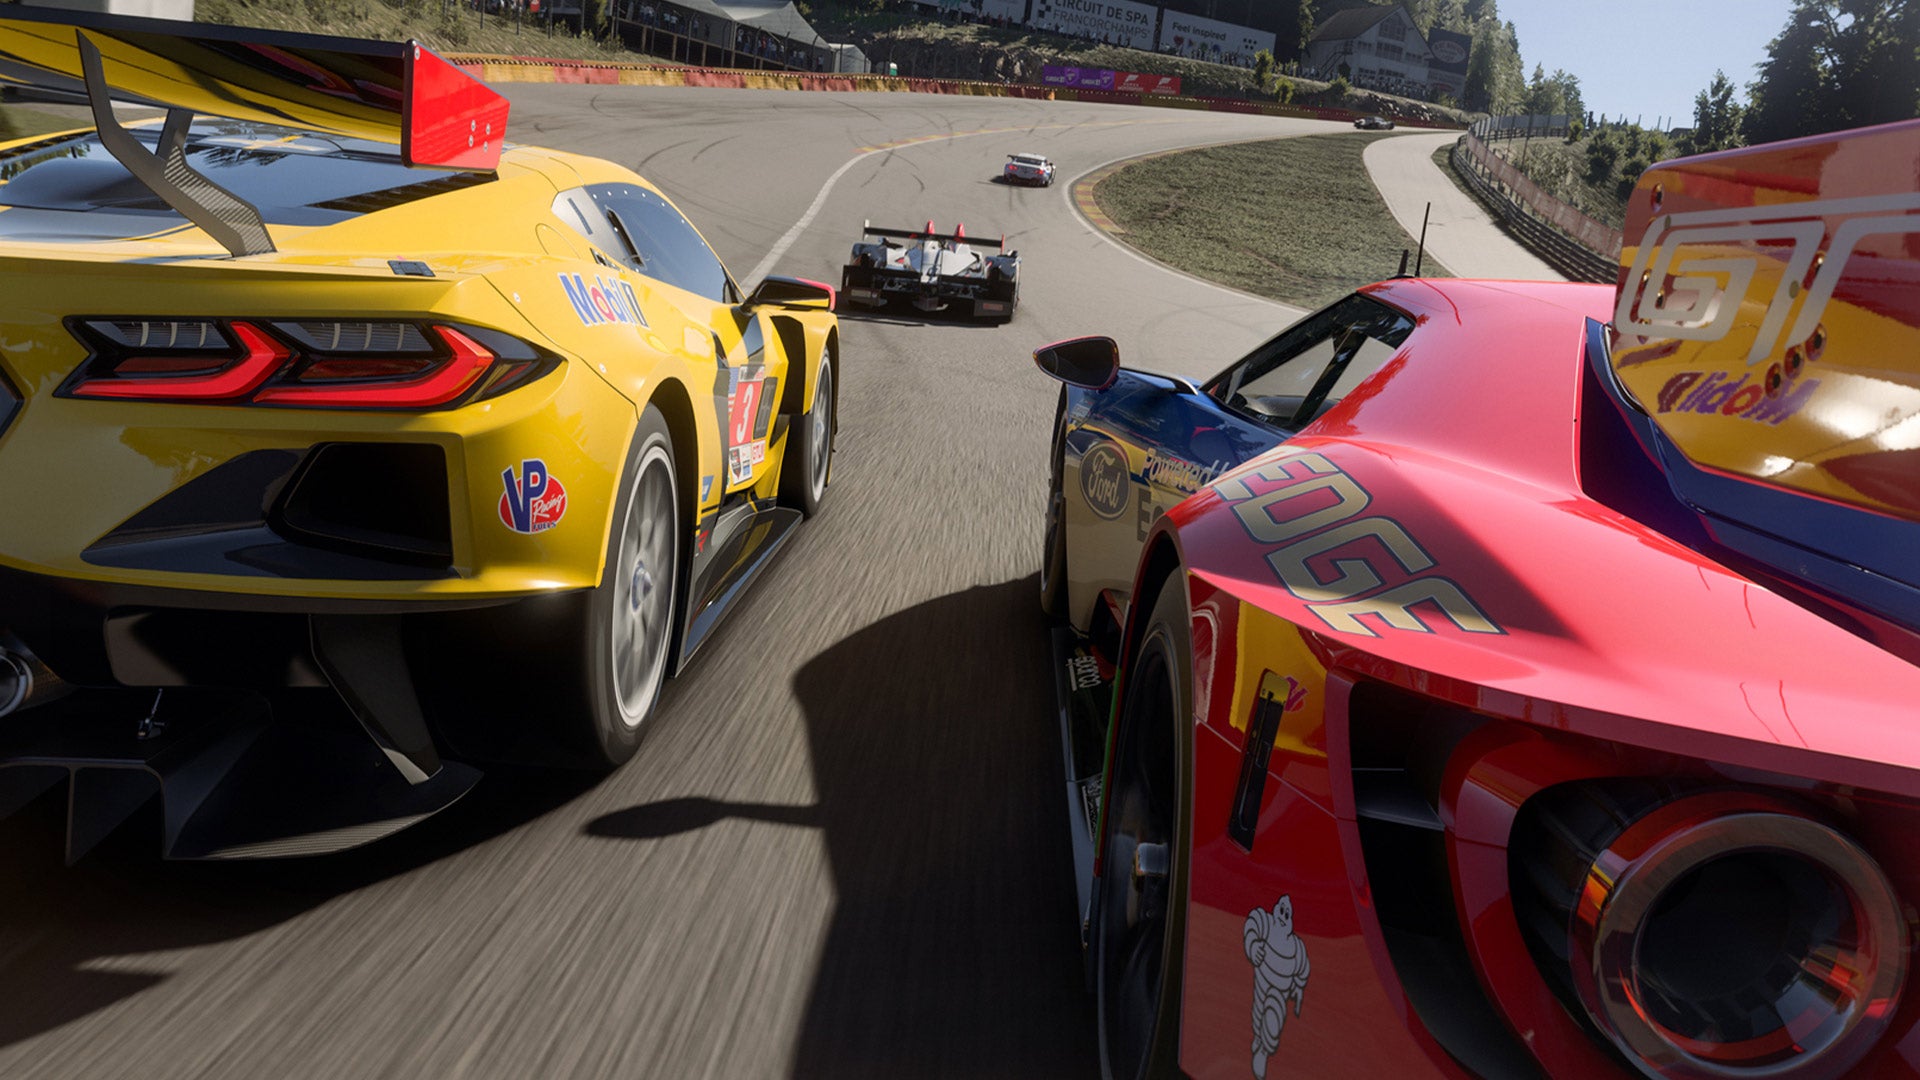 Il prossimo aggiornamento di Forza Motorsport, in arrivo questa settimana, modificherà il "Safety Rating".